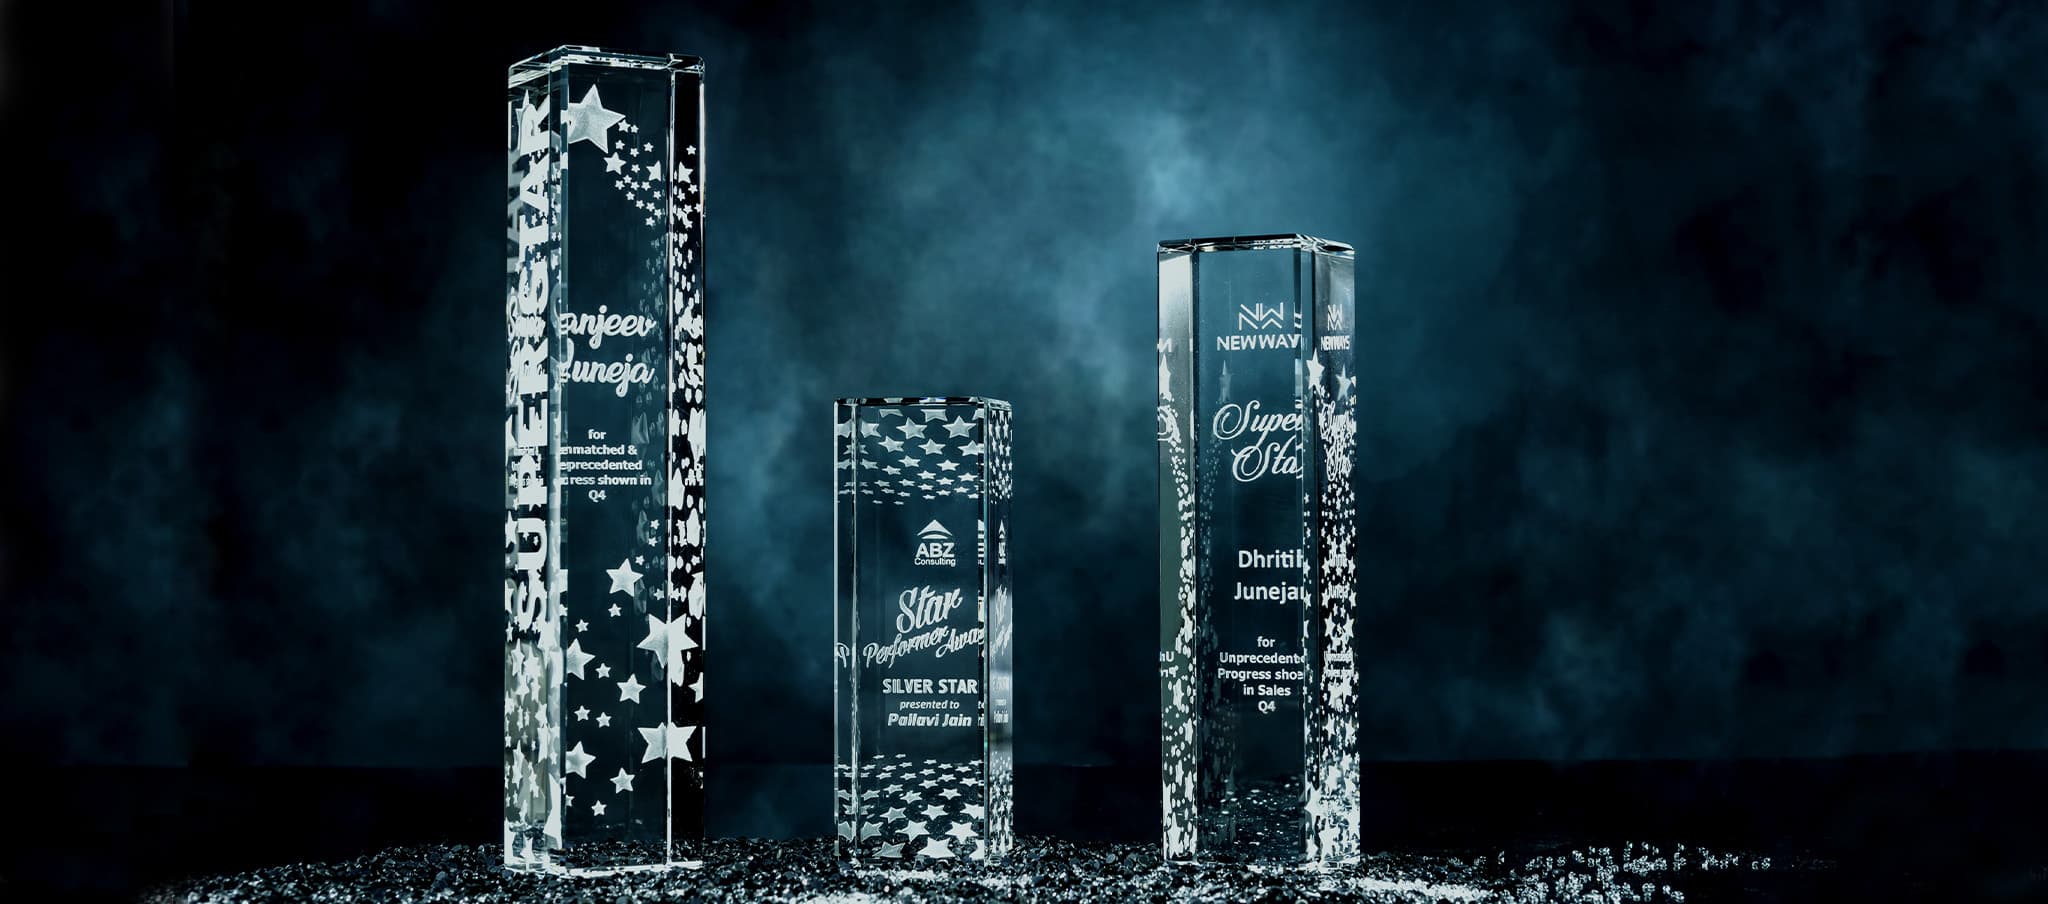 Shimmering crystal awards against black backdrop